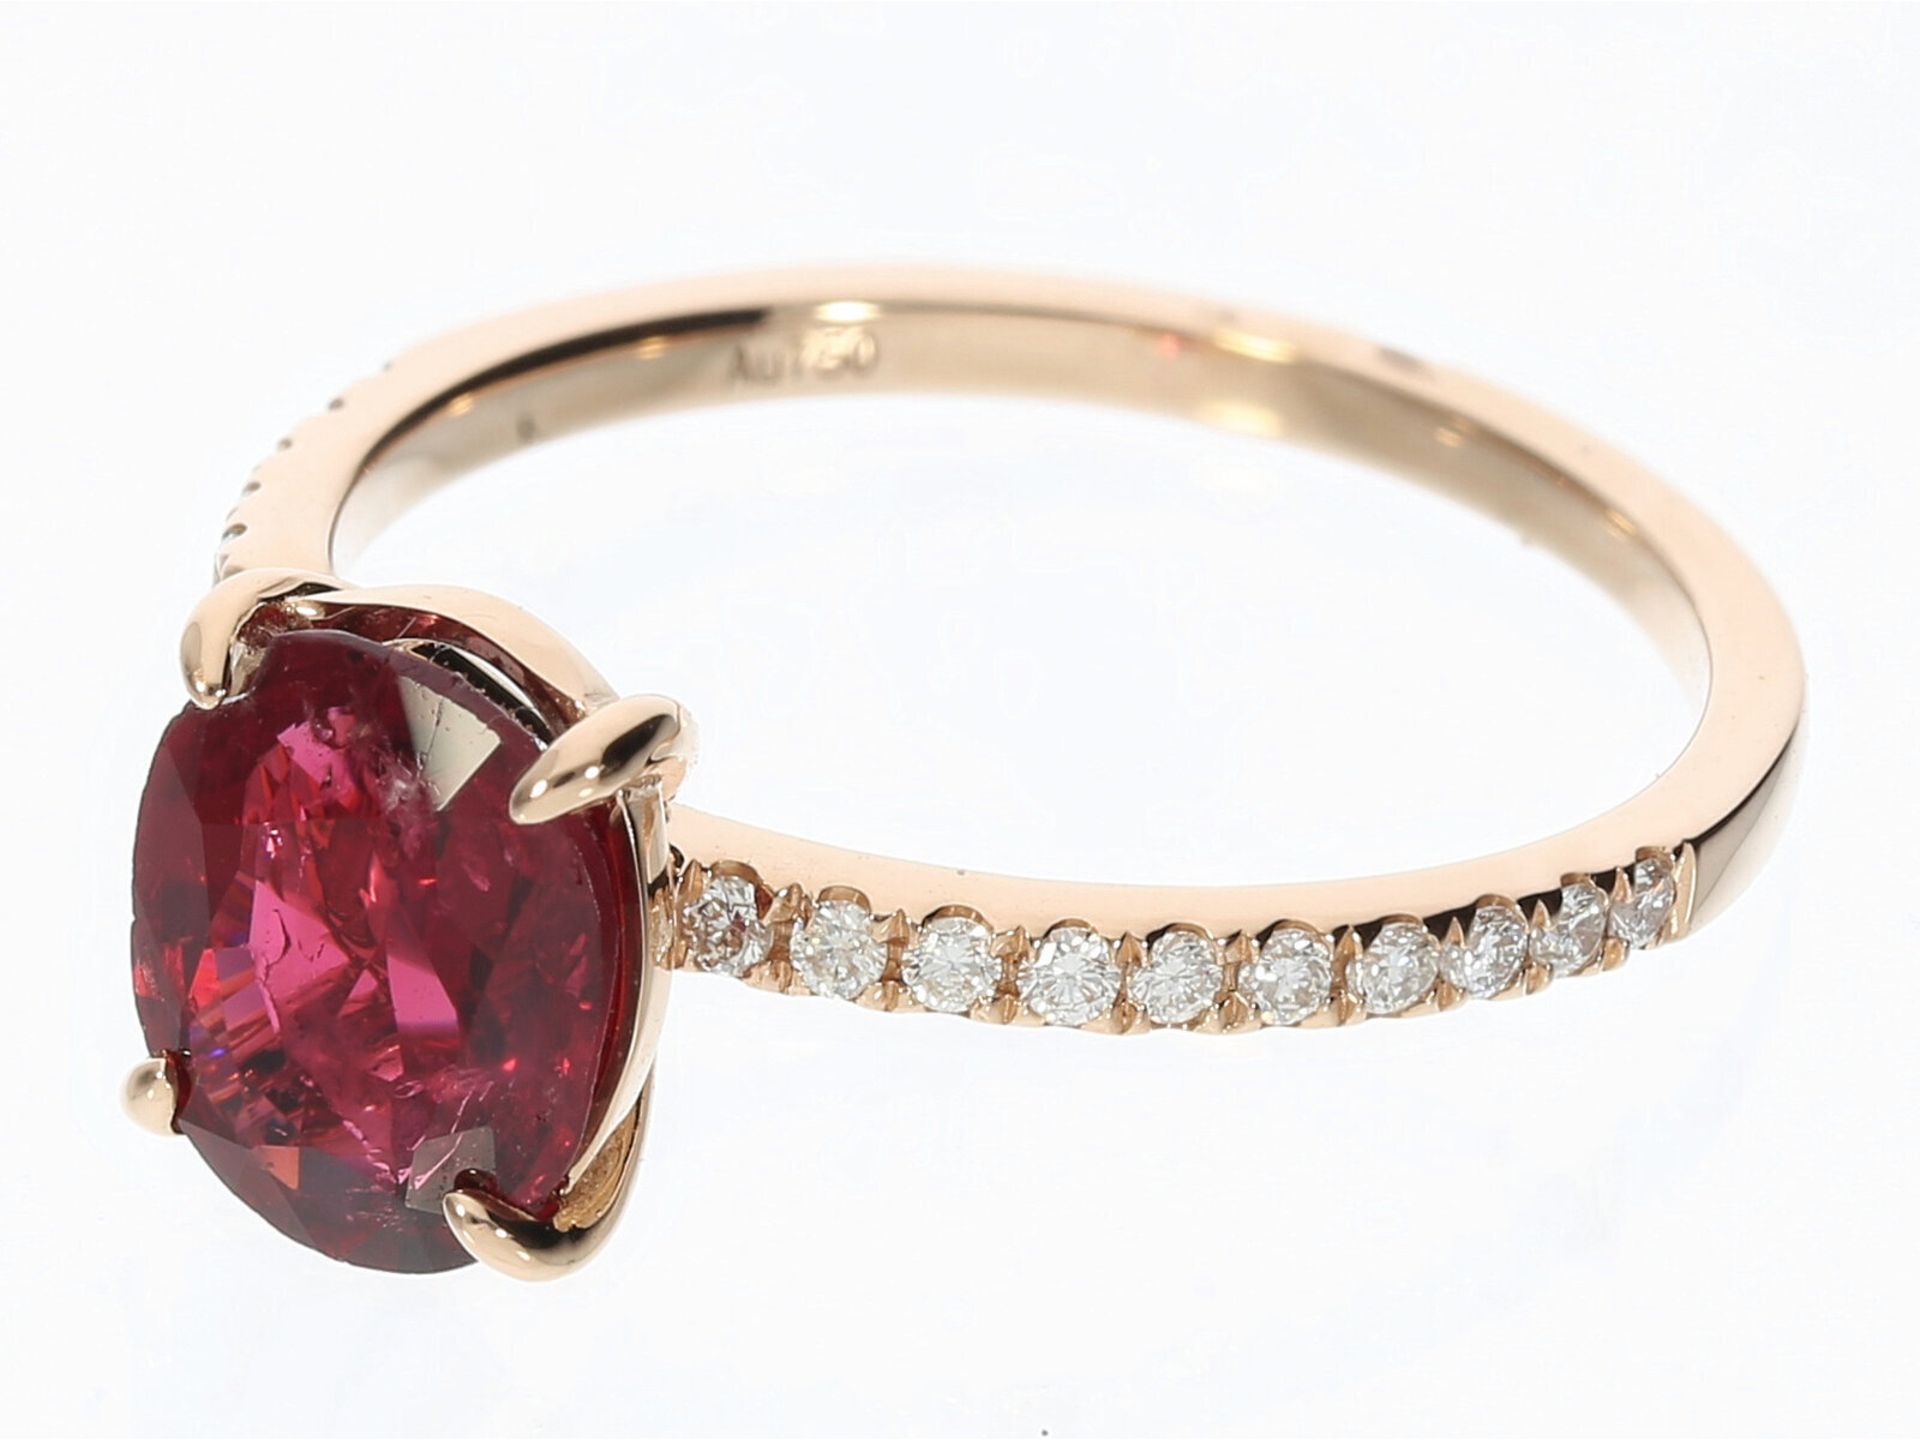 Ring mit rotem Spinell und kleinen Brillanten besetzt, 18K Gold, neuwertig - Image 2 of 2